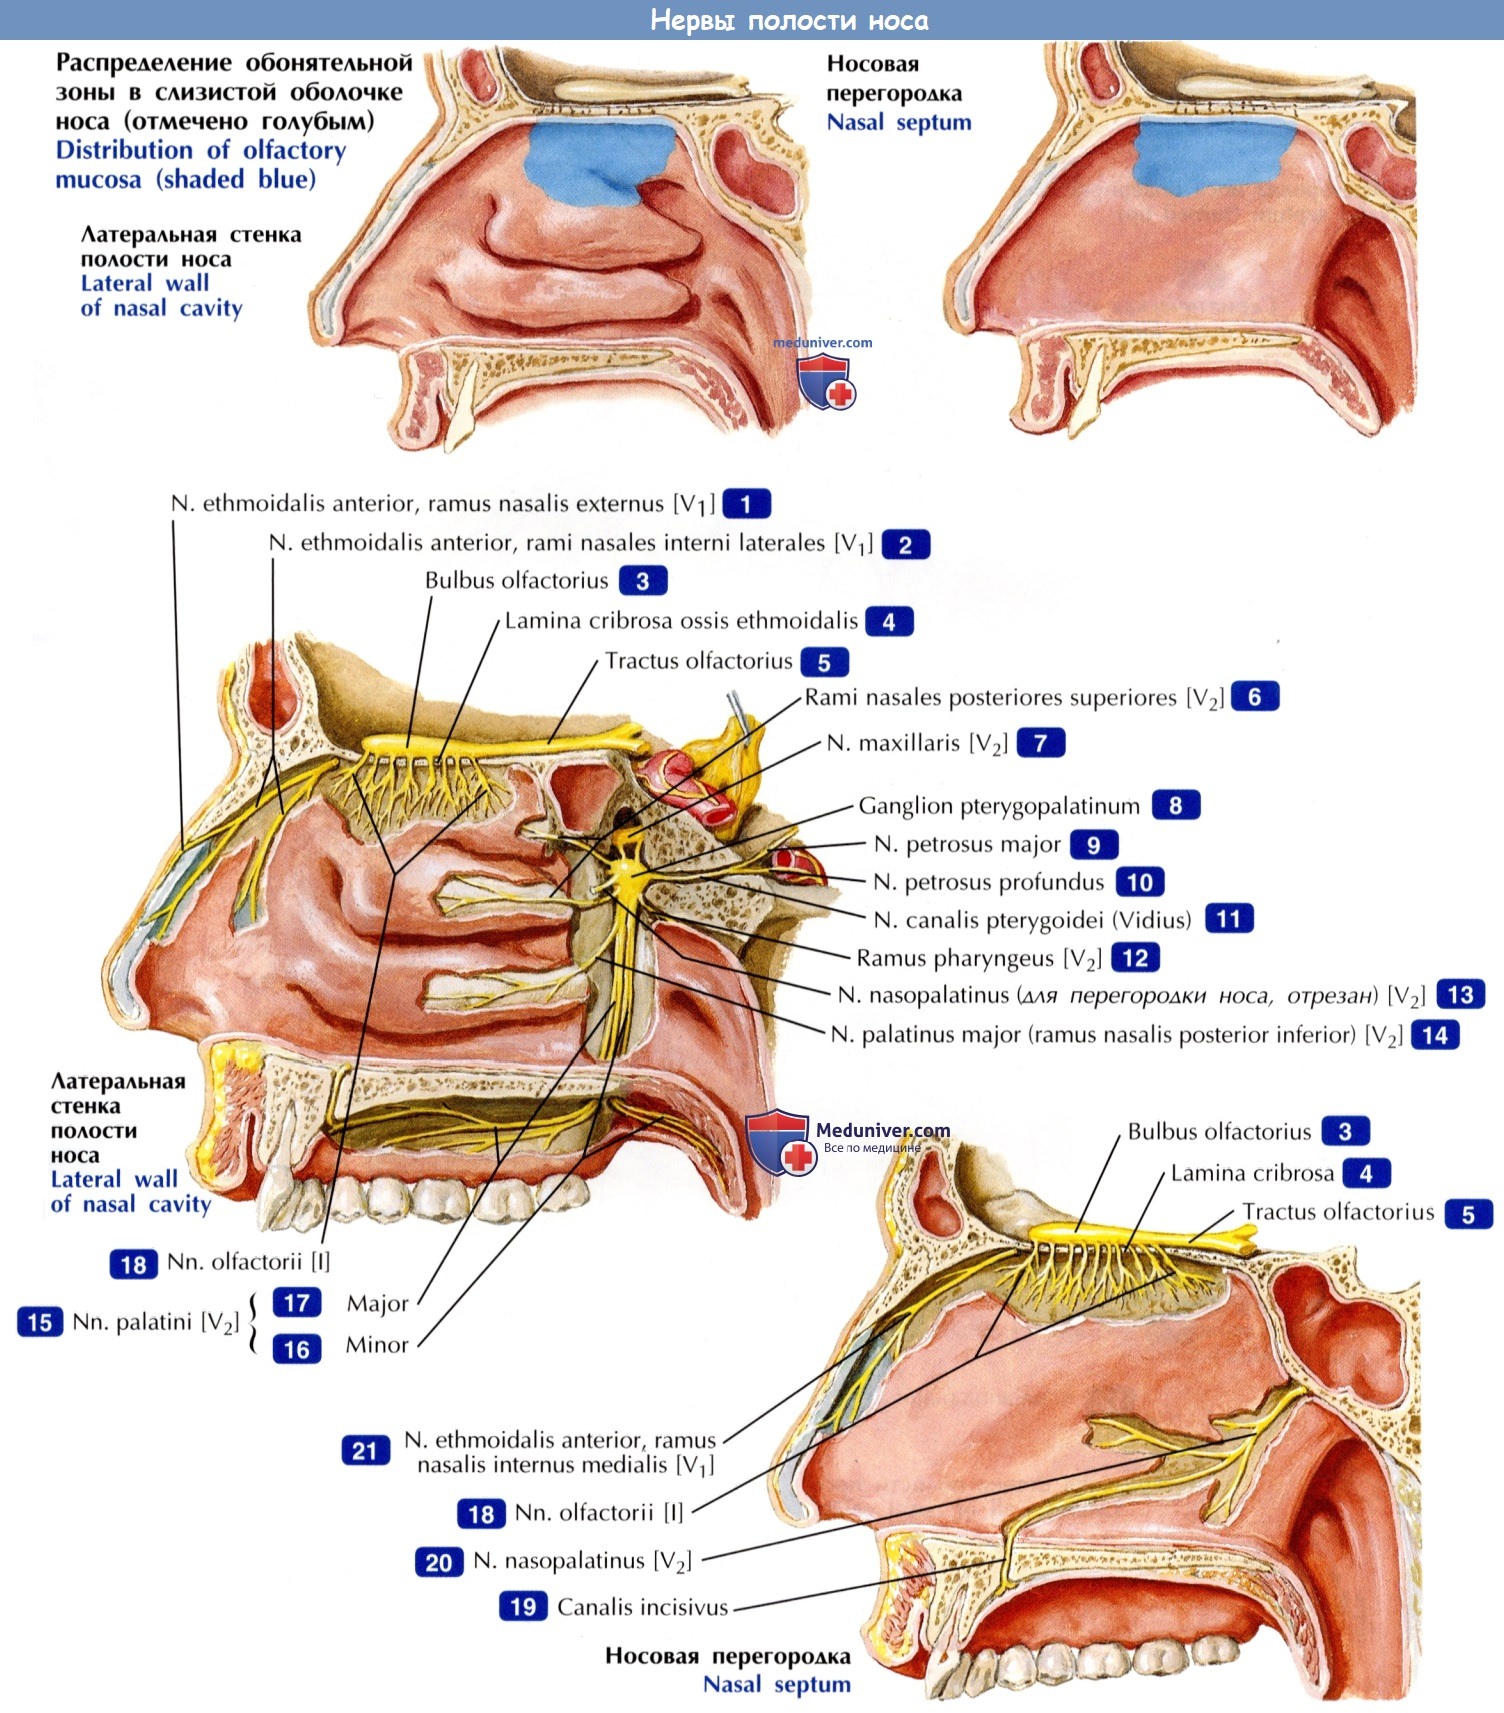 Нервы полости носа - по атласу анатомии